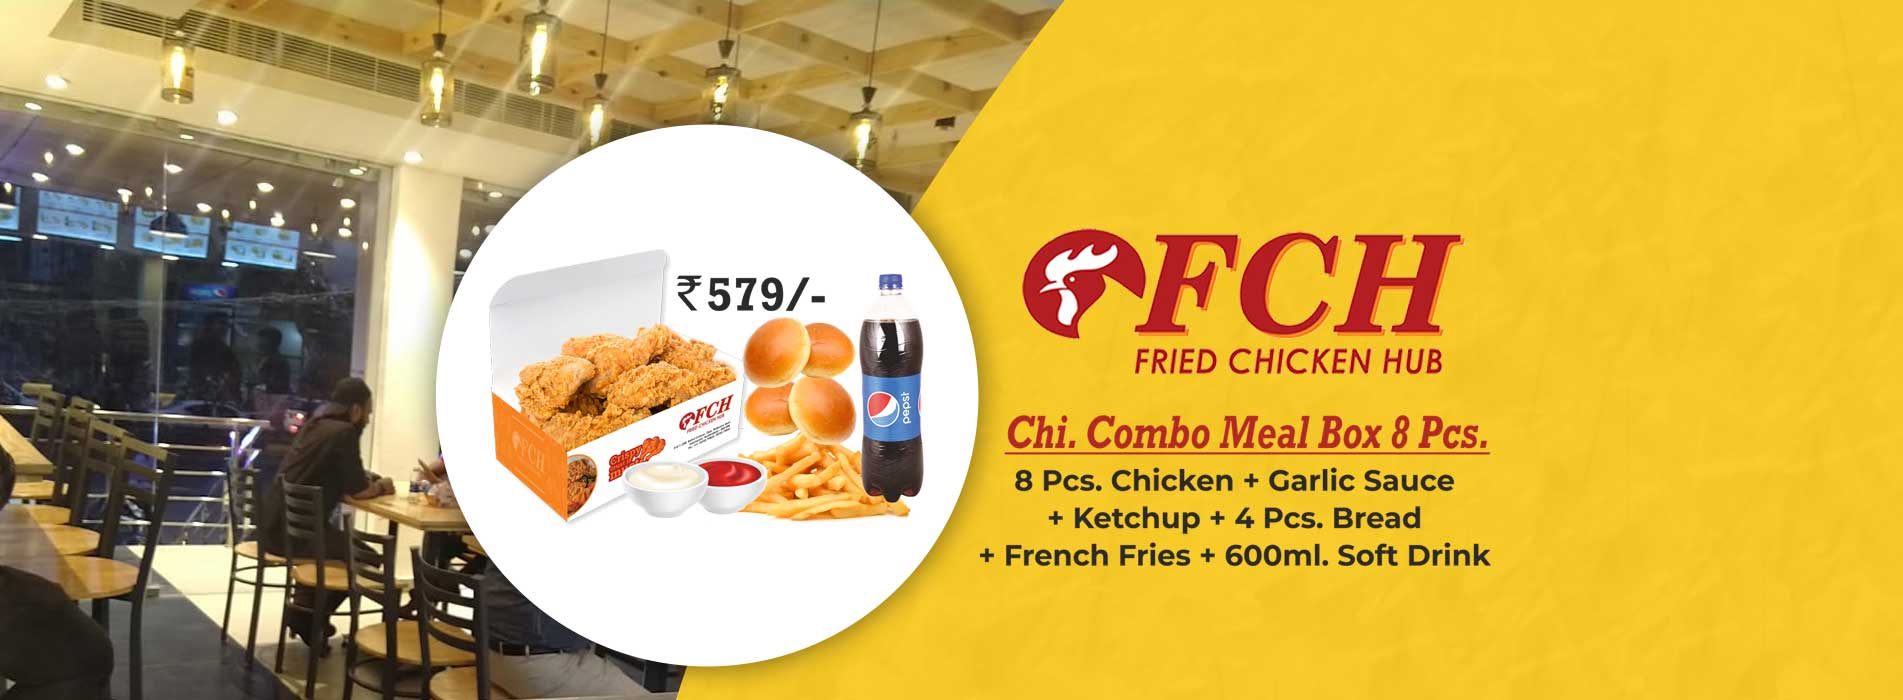 Fried Chicken Hub Toli Chowki